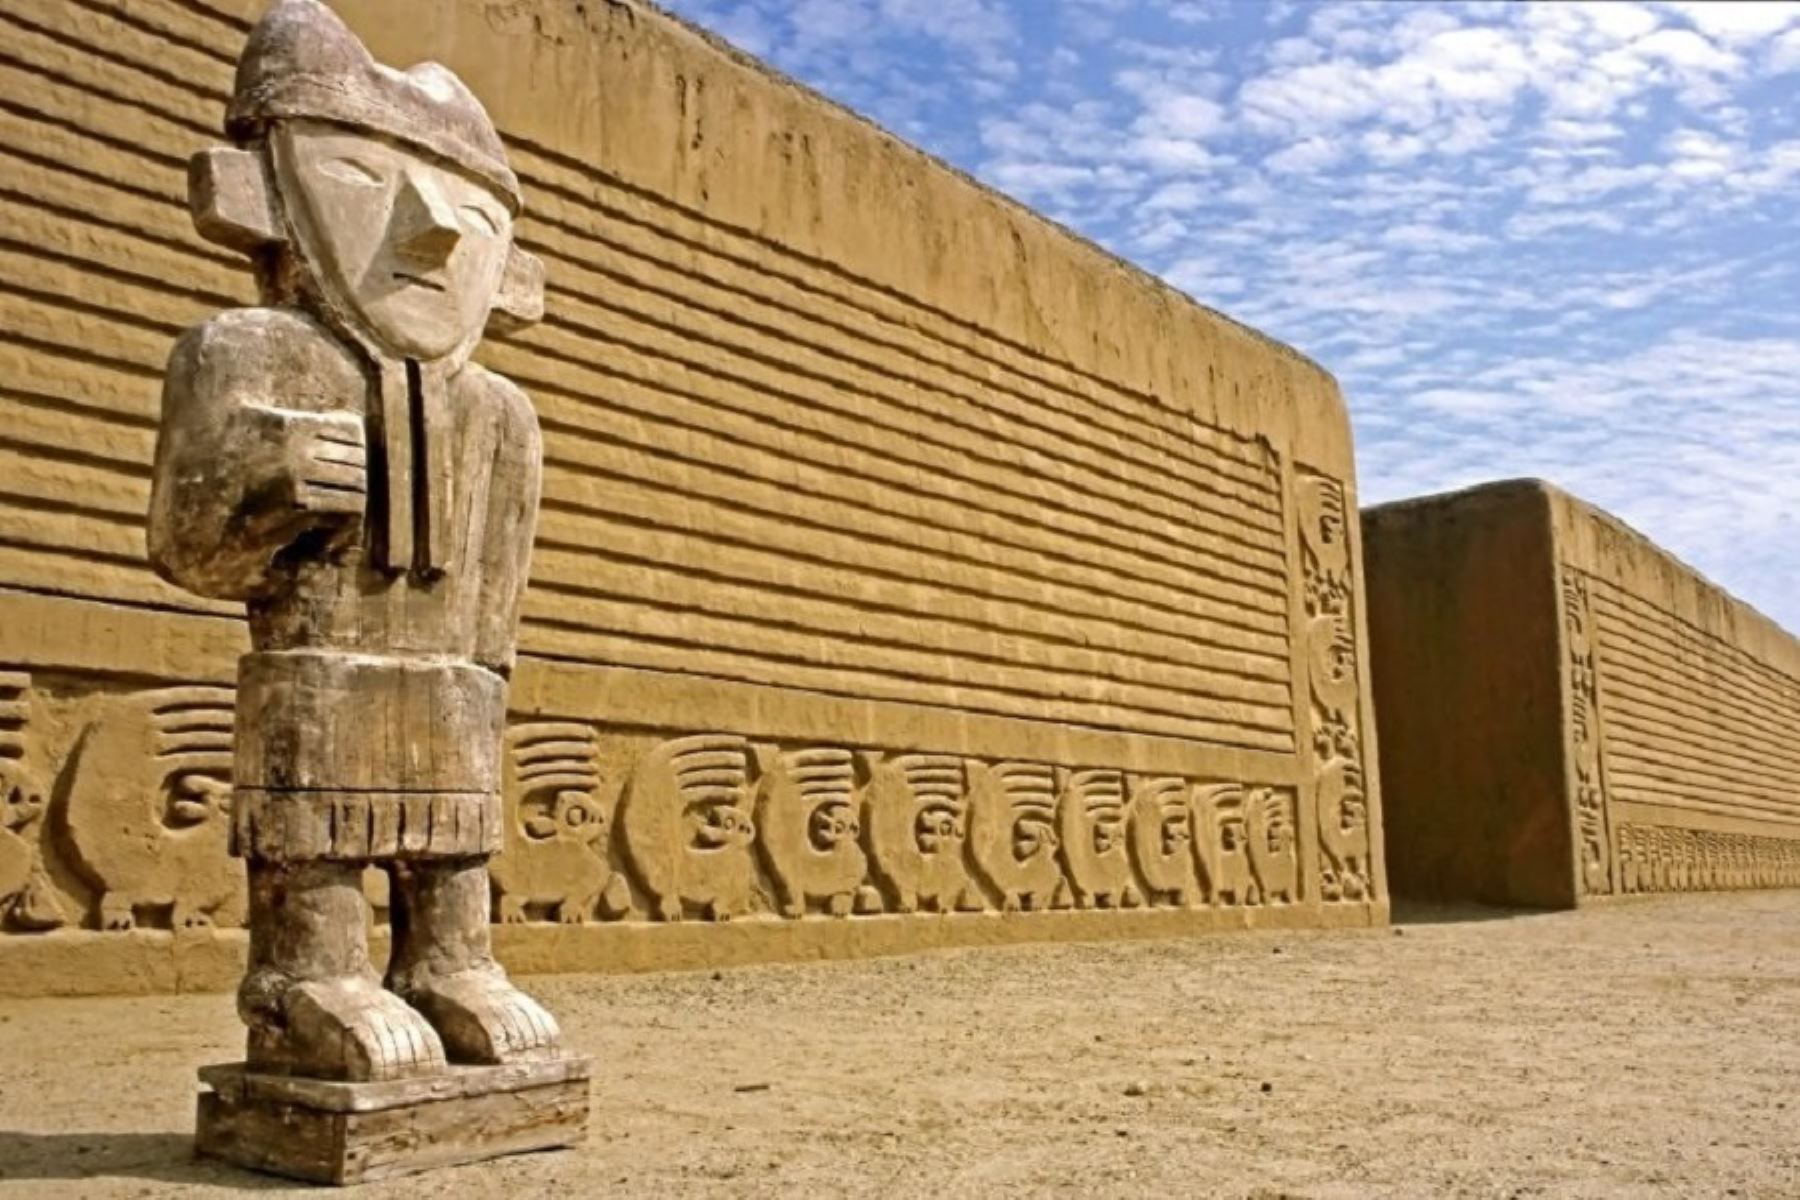 El norte del Perú ha sido considerado como uno los mejores lugares del mundo para visitar durante el 2018, según la reconocida publicación turística Conde Nast Traveler de Estados Unidos. A continuación, conoce algunos de los atractivos emblemáticos que existen en esta zona del país.